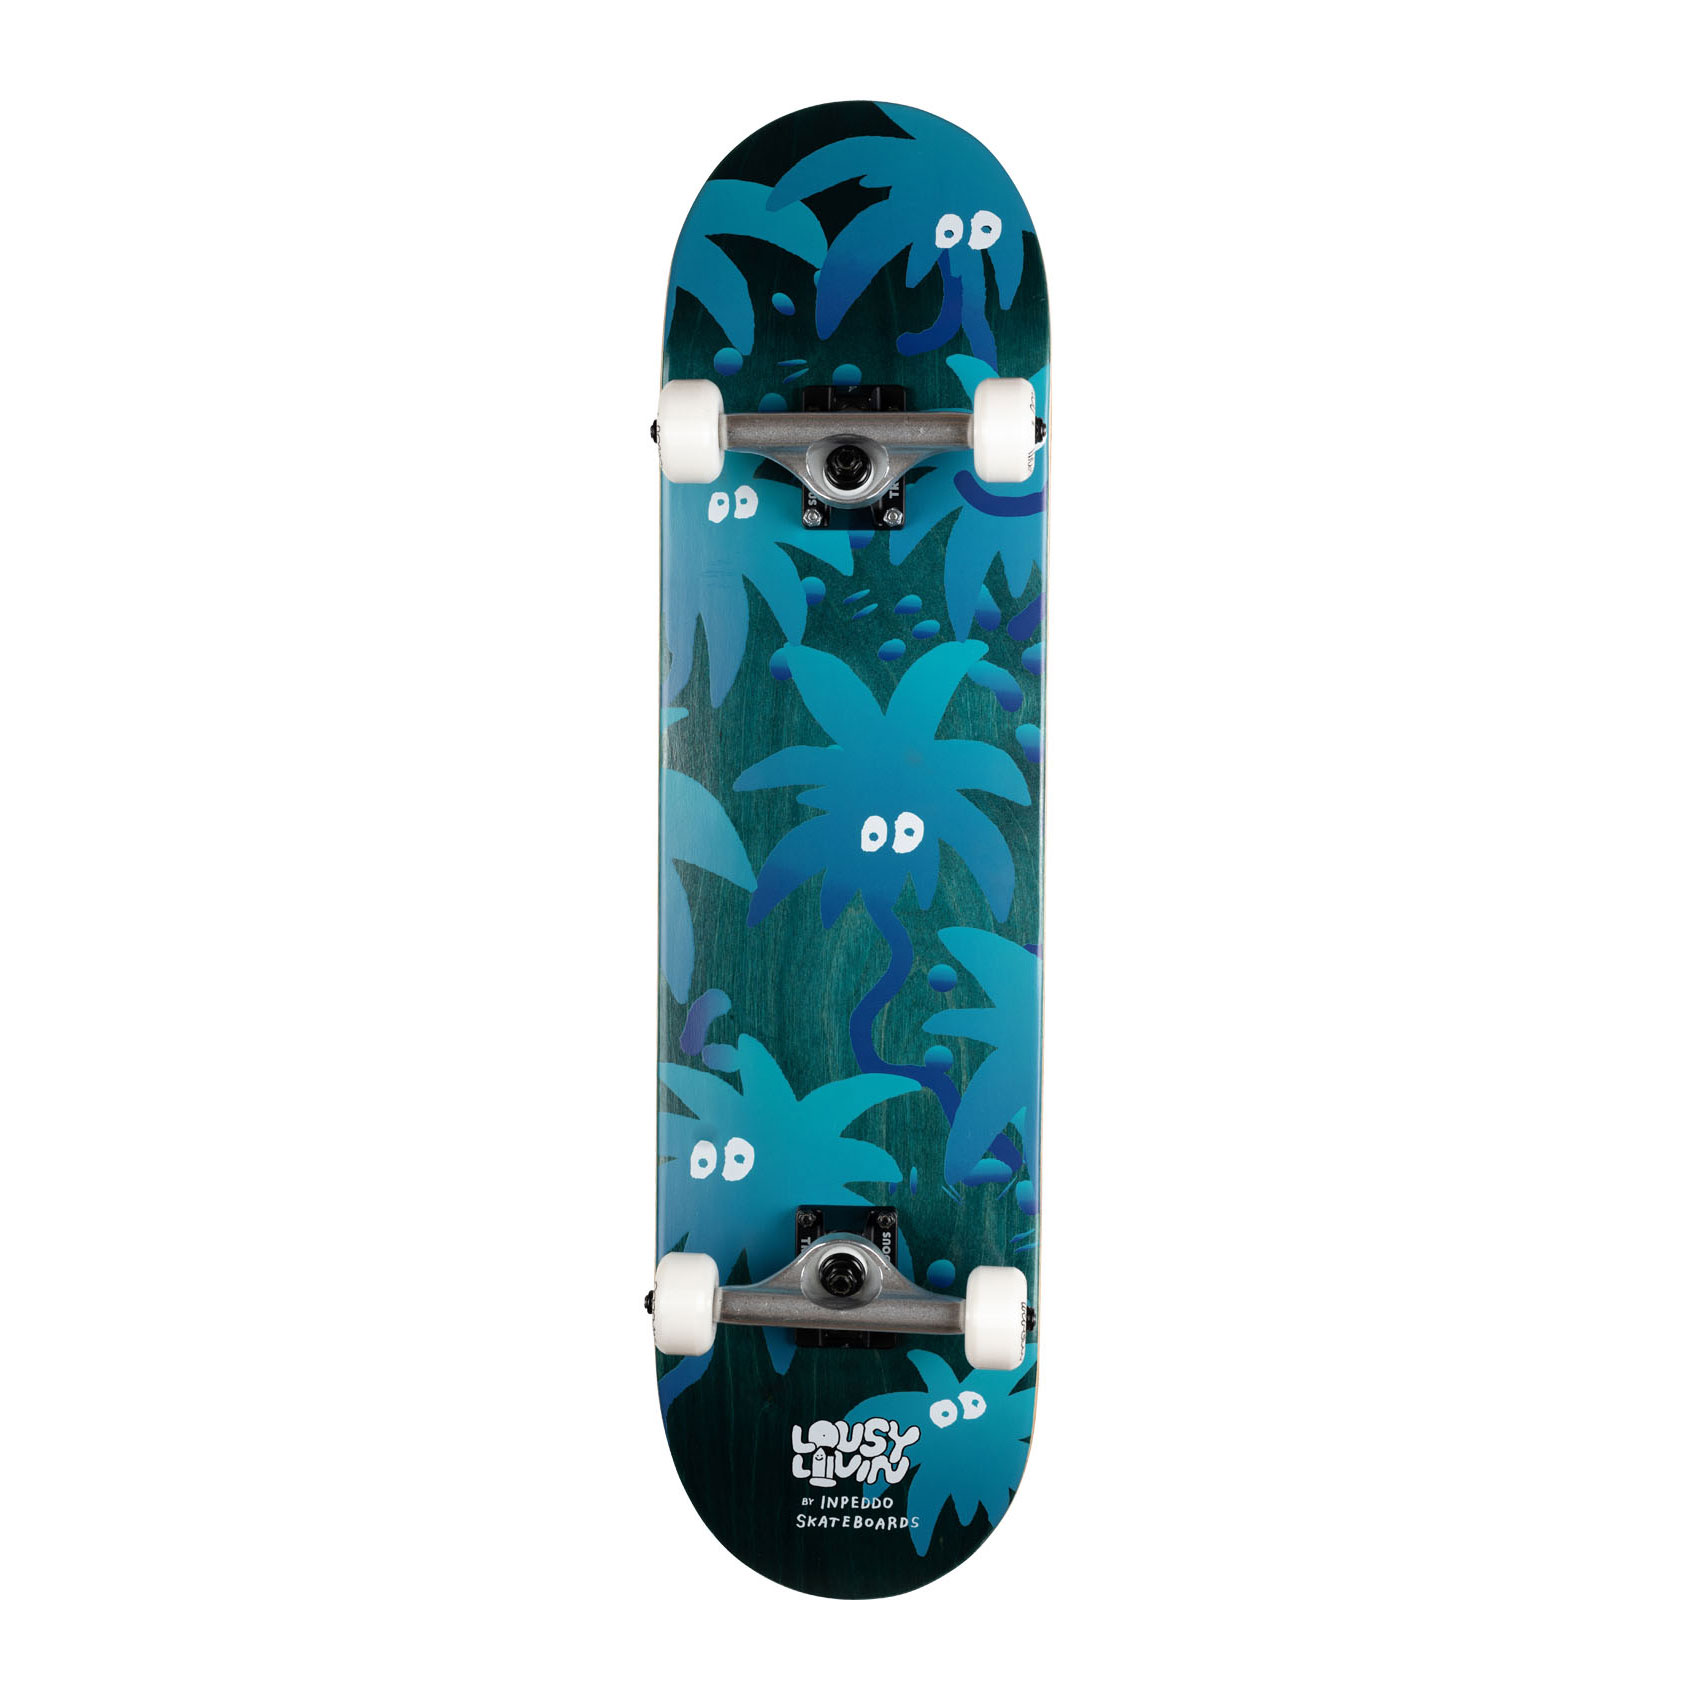 Inpeddo x Lousy Livin Skateboard Komplettboard Palm Eyes Standard 8.125"